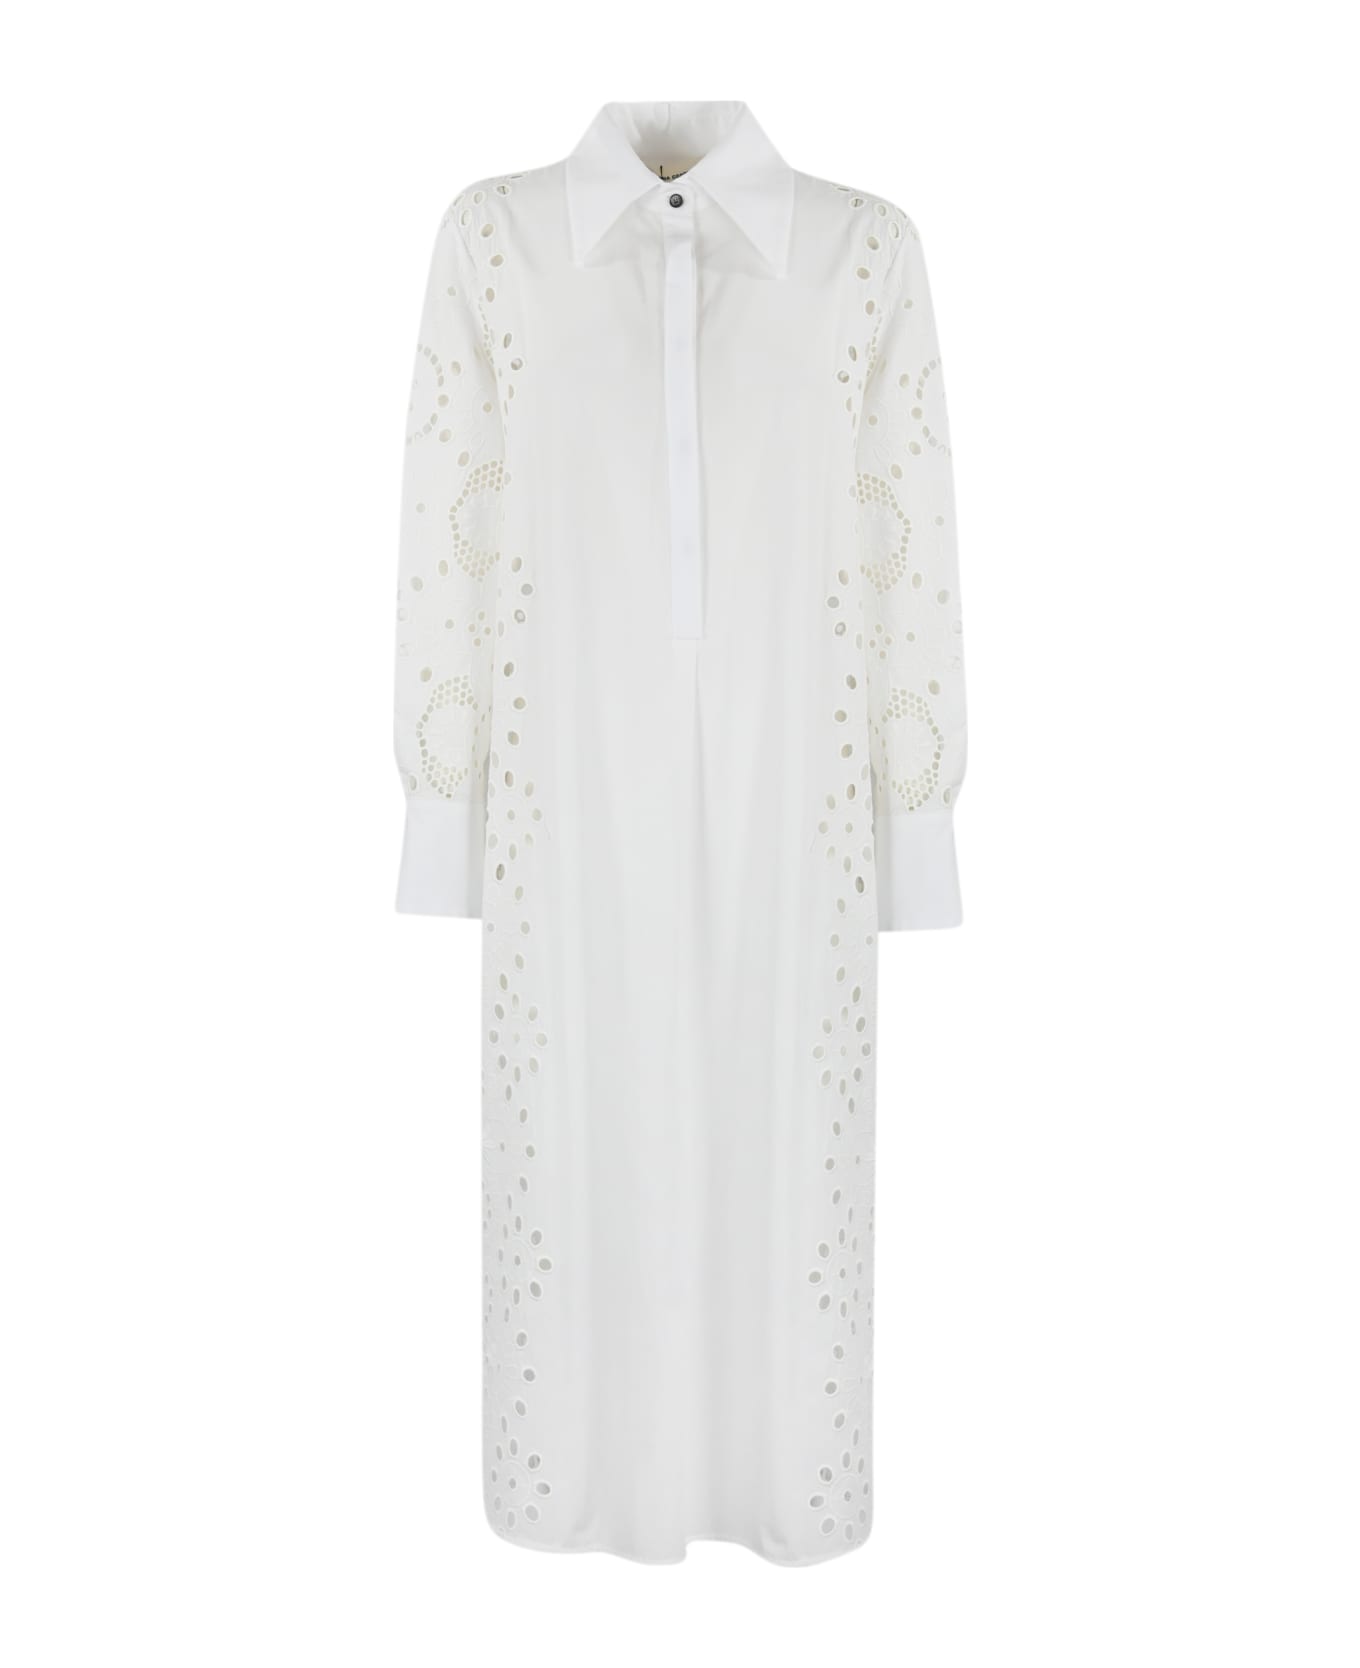 Liviana Conti Sangallo Dress - White